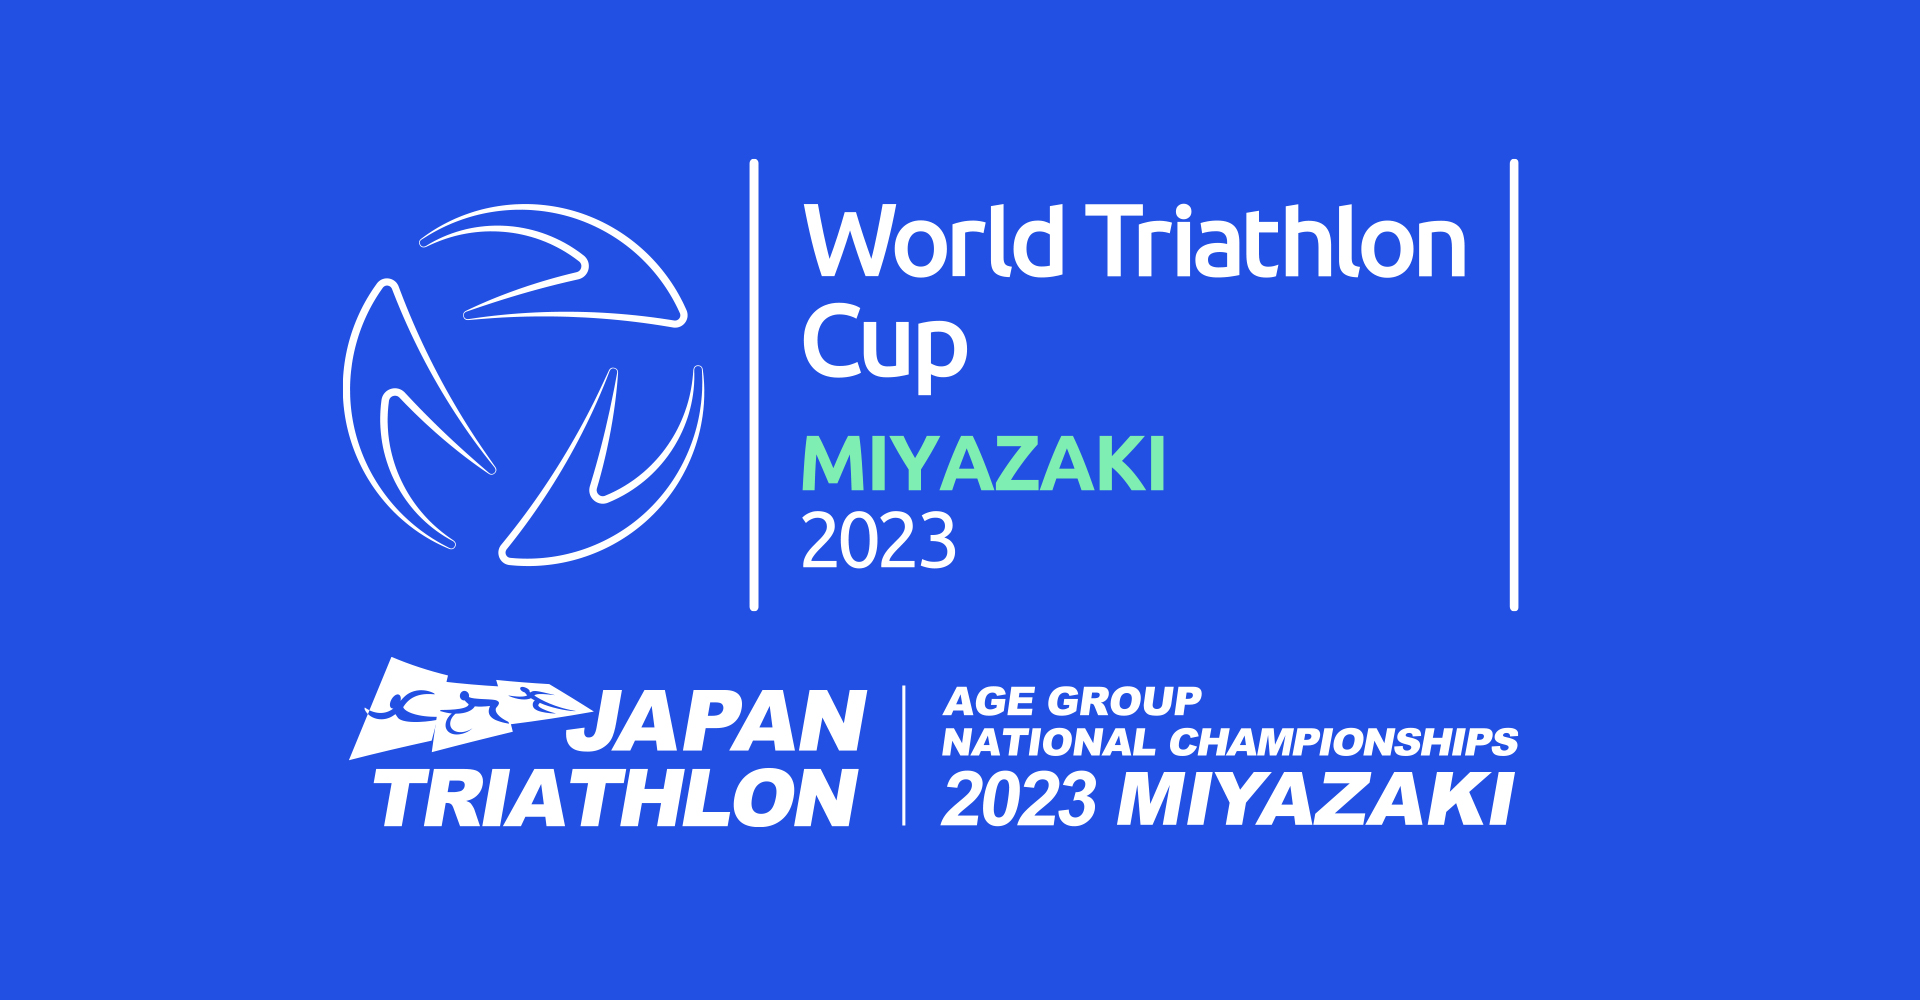 ワールドトライアスロンカップ（2023/宮崎） / World Triathlon Cup 2023/MIYAZAKI